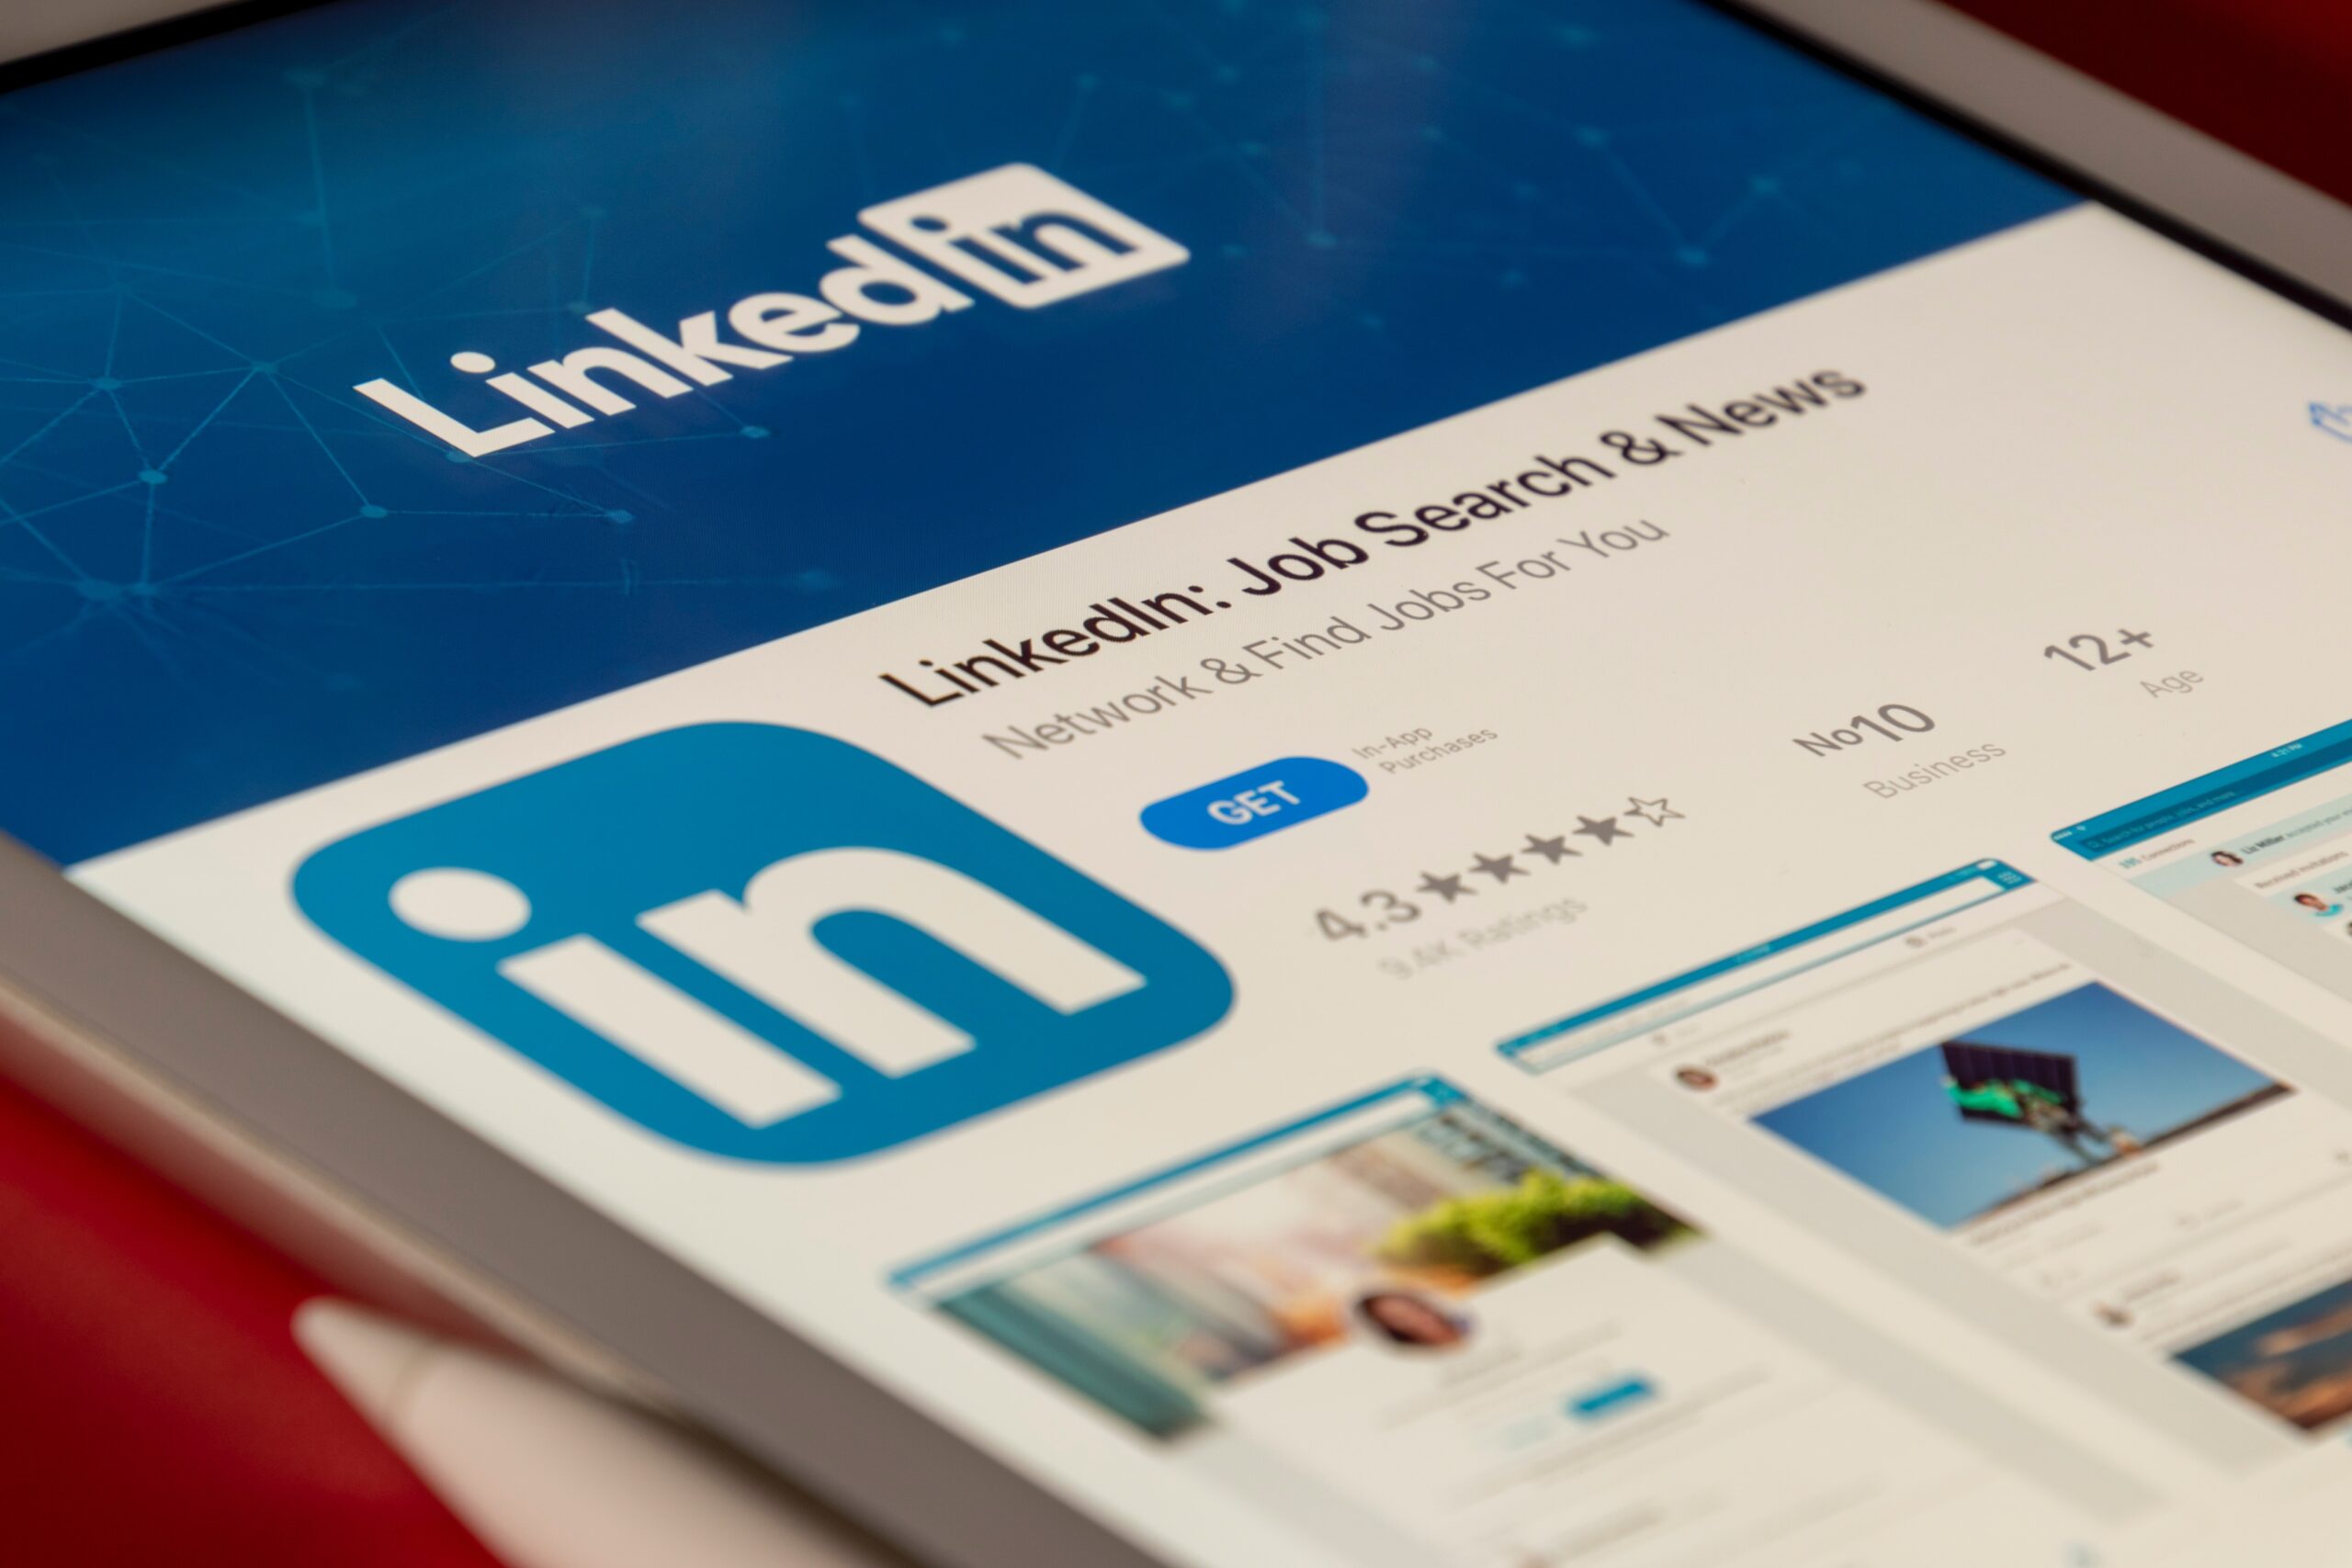 LinkedIn social media app displayed on a tablet